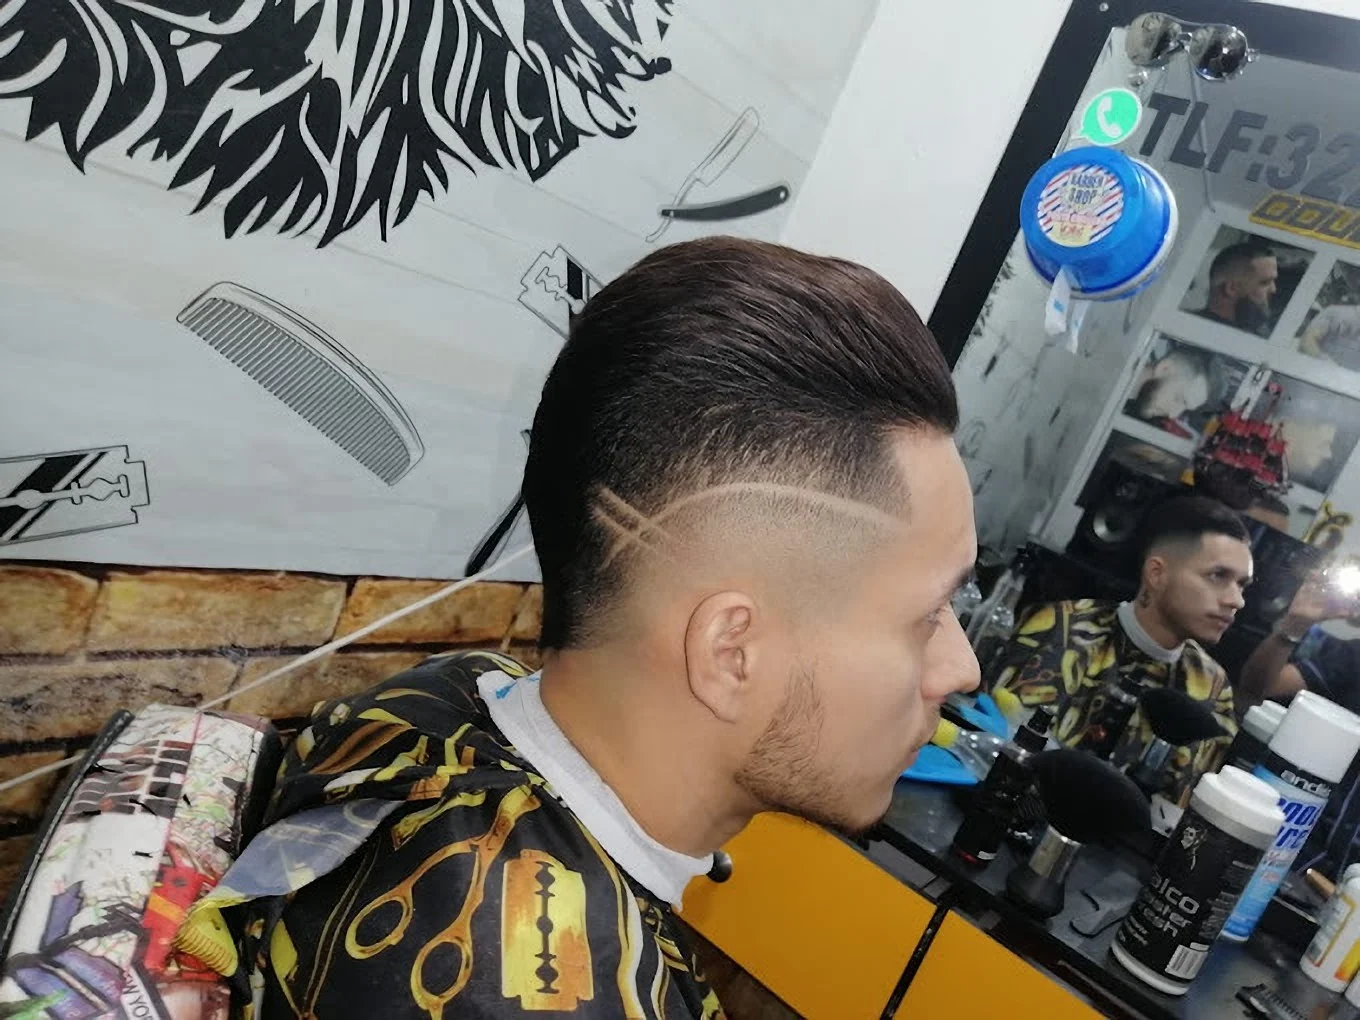 Barbería-barber-shop-flow-latino-9985